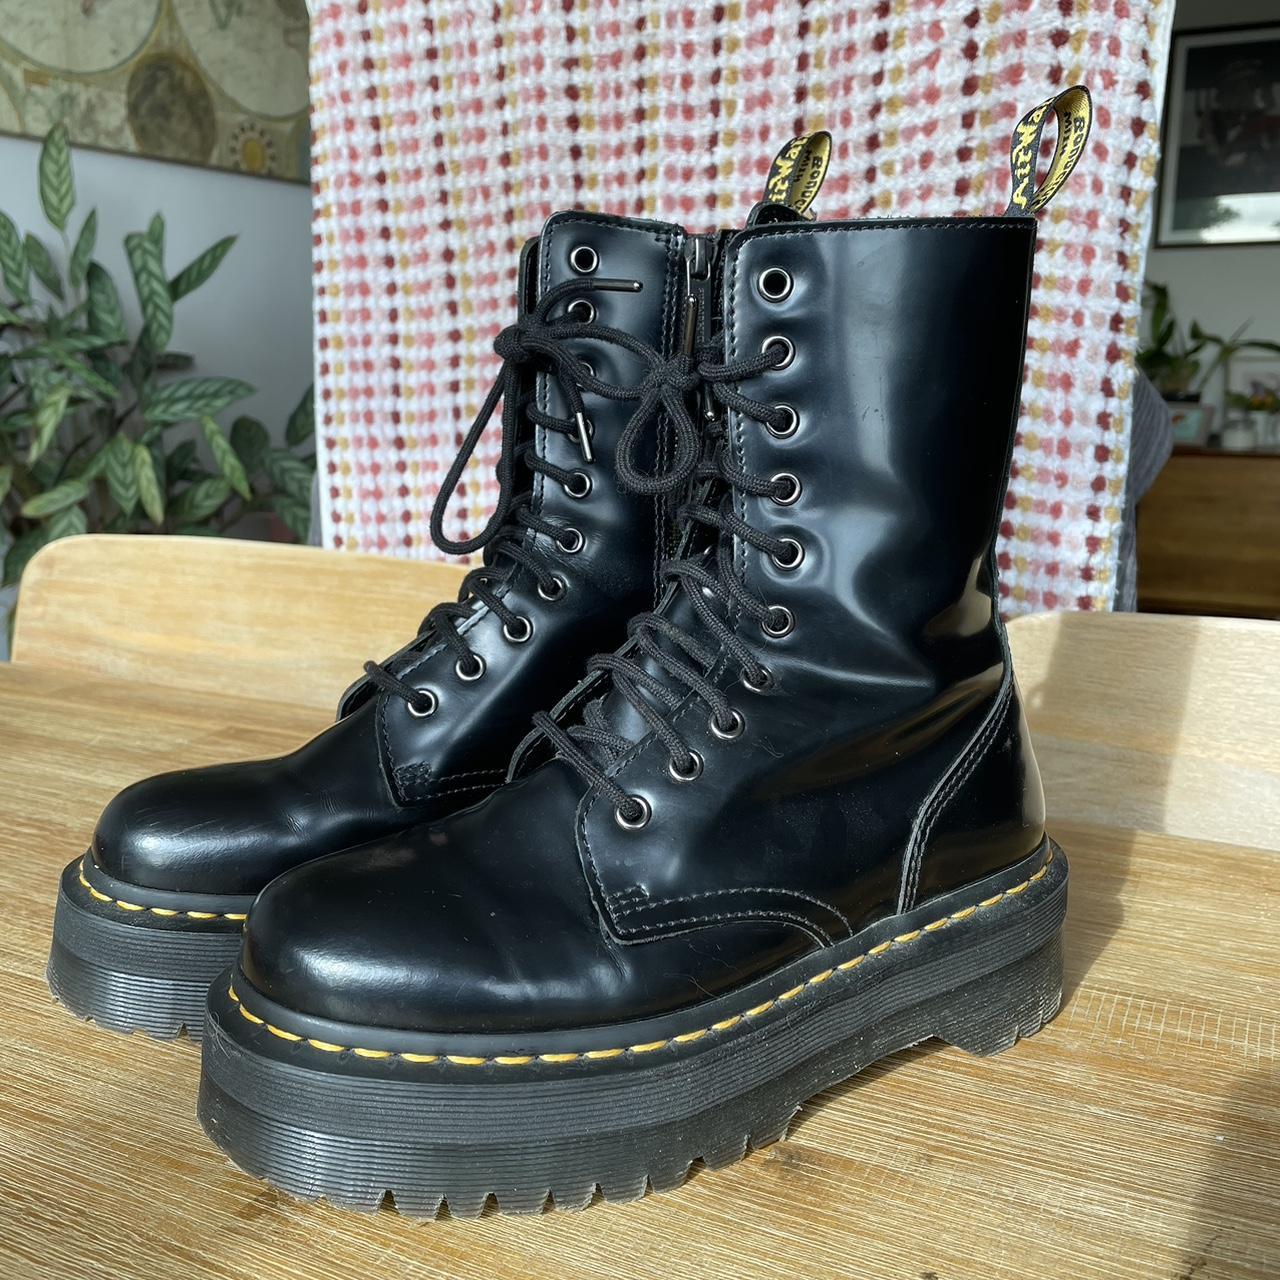 Dr Martens Jadon platform boots size UK5/EU38 10... - Depop